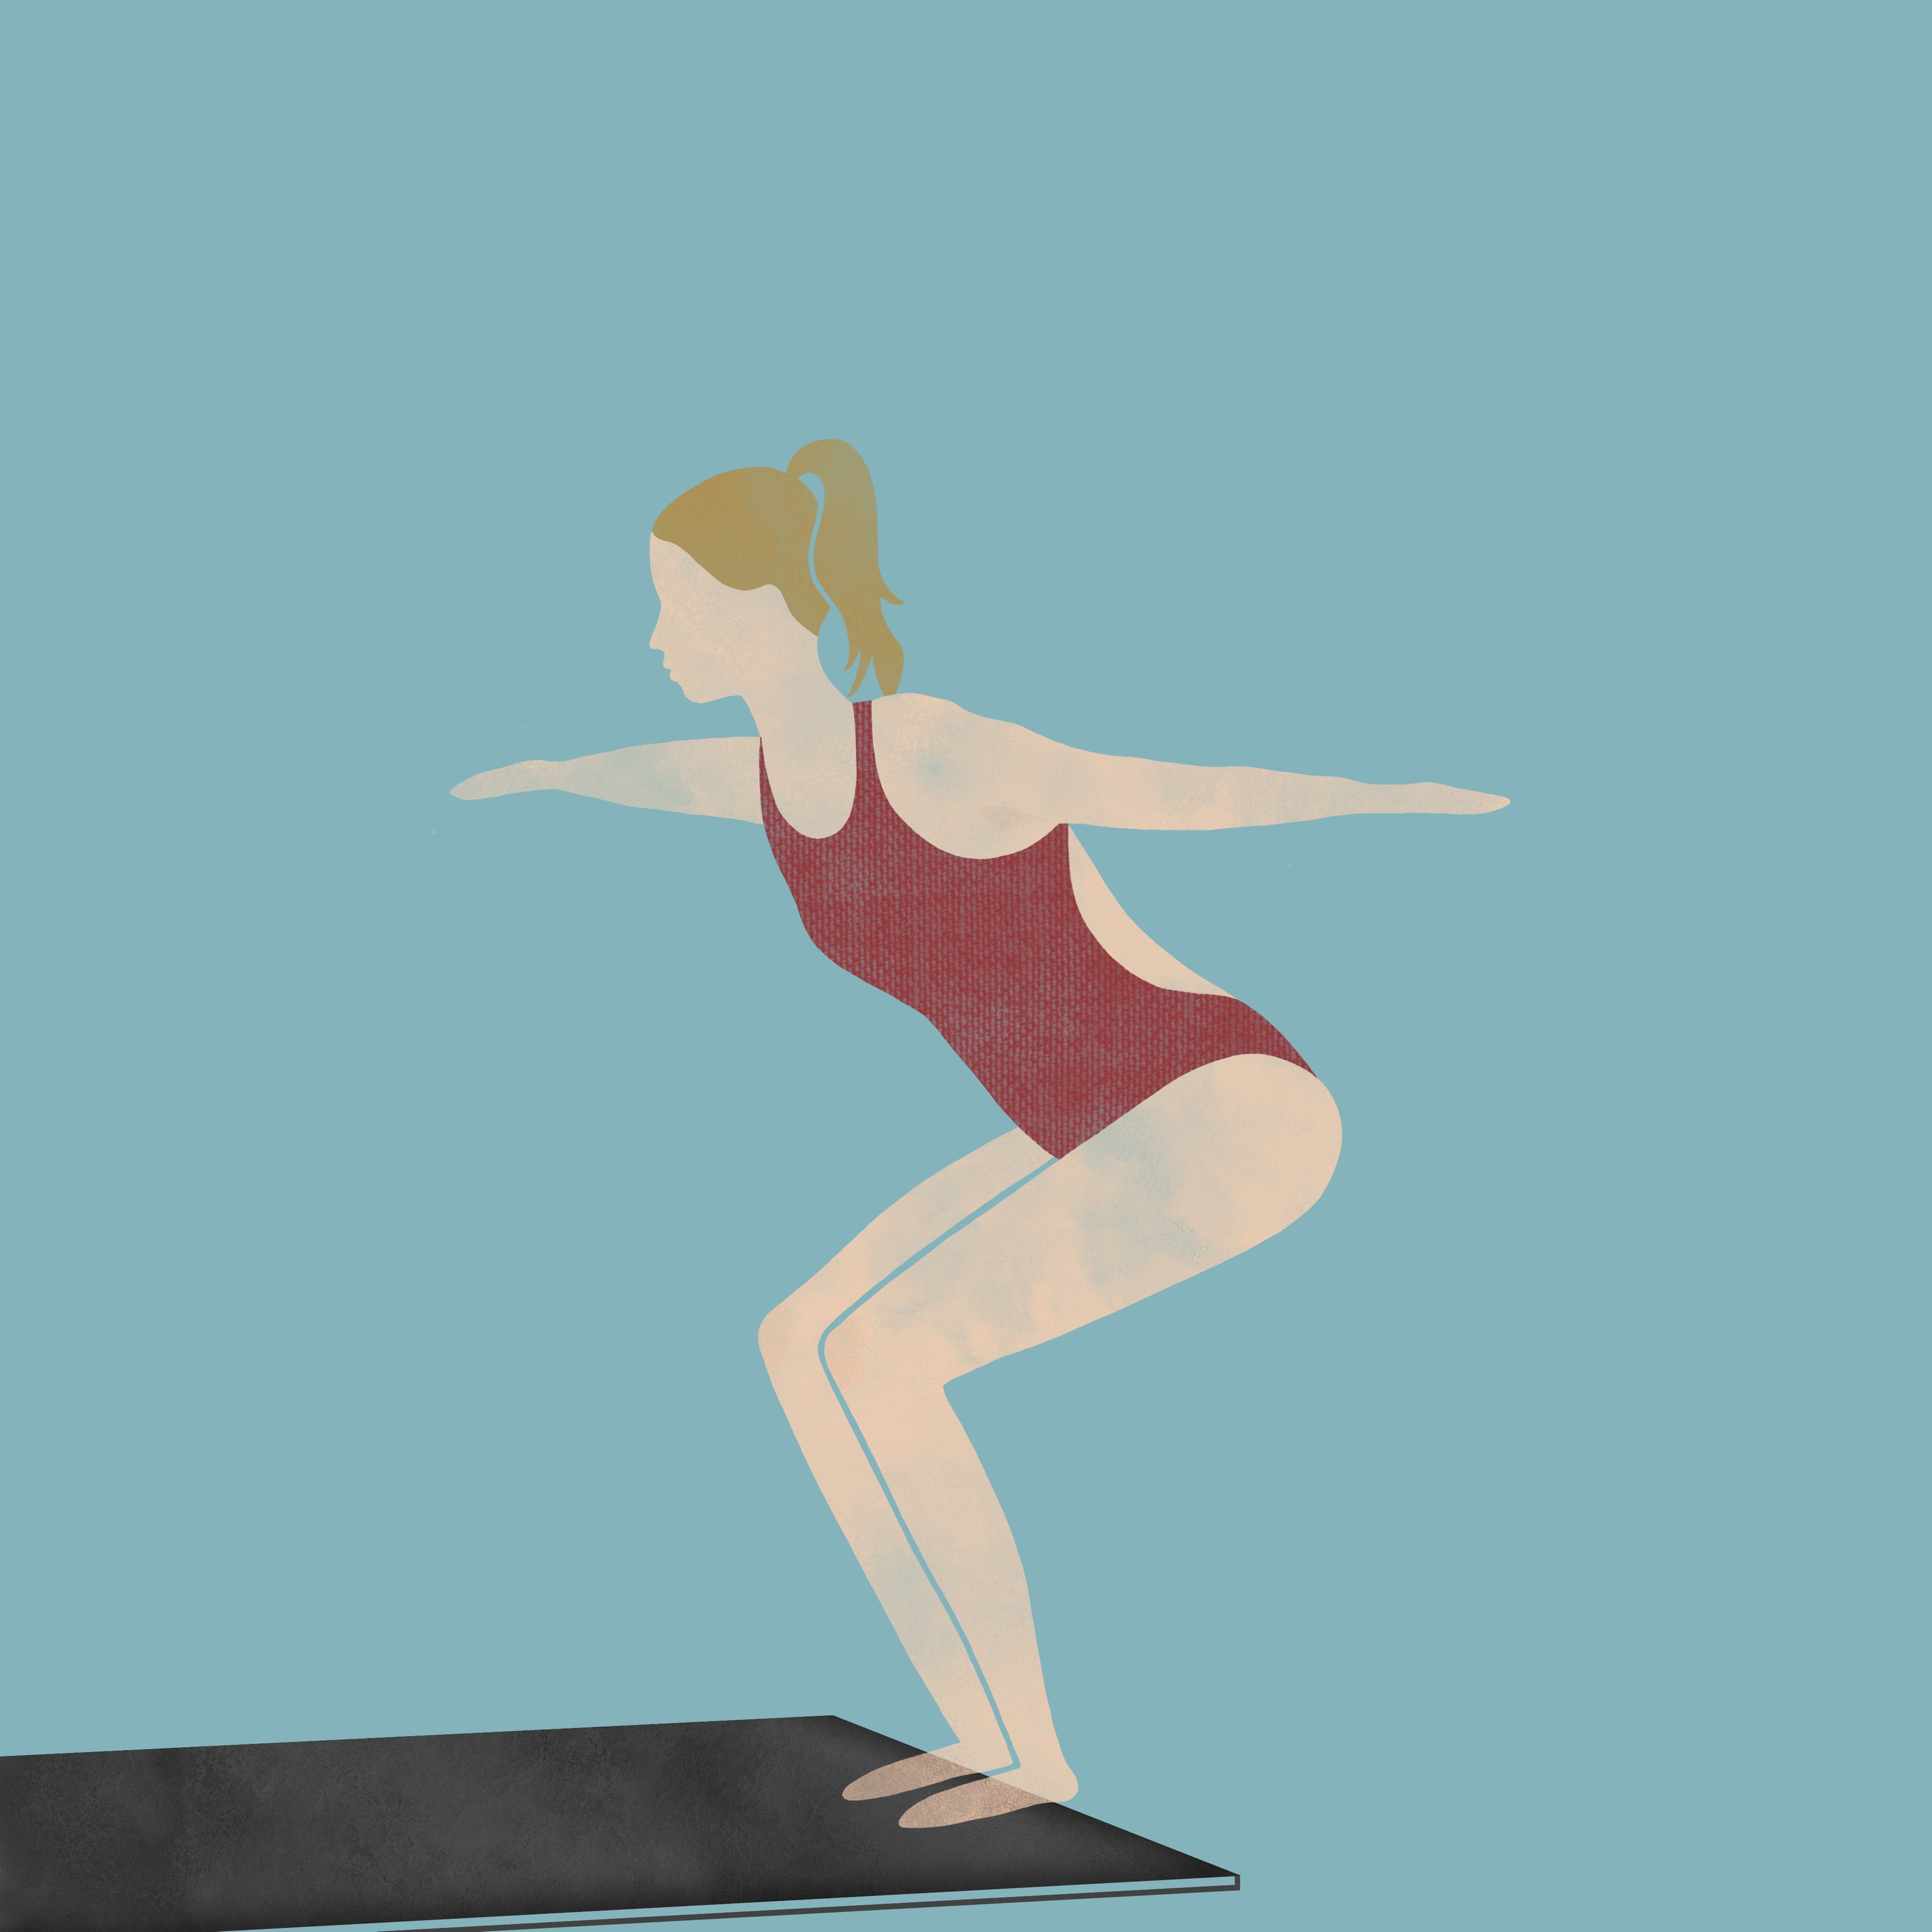 Die Turmspringerinnen: Die Zeichnung zur Episode 2 des Podcasts zeigt eine Turmspringerin auf einem Sprungbrett, die sich sich in einer leichten Hocke auf den Sprung vorbereitet.